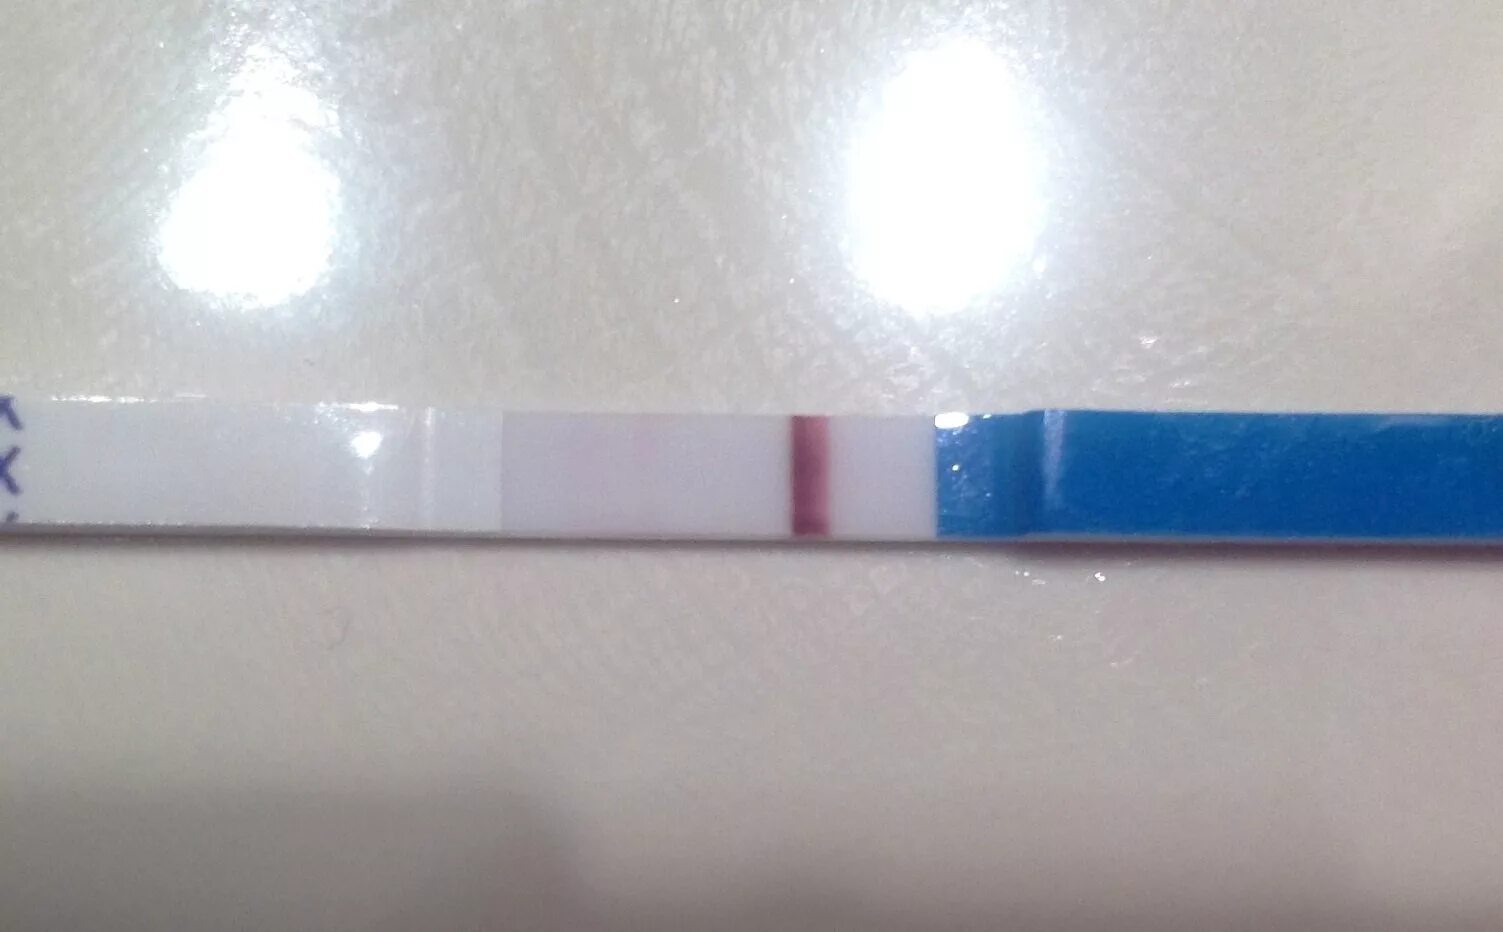 3 полоски тест на беременность что означает. Тест на беременность полоски. Вторая полоска на тесте. Тест на беременность 2 полоски. Вторая полоска белая.